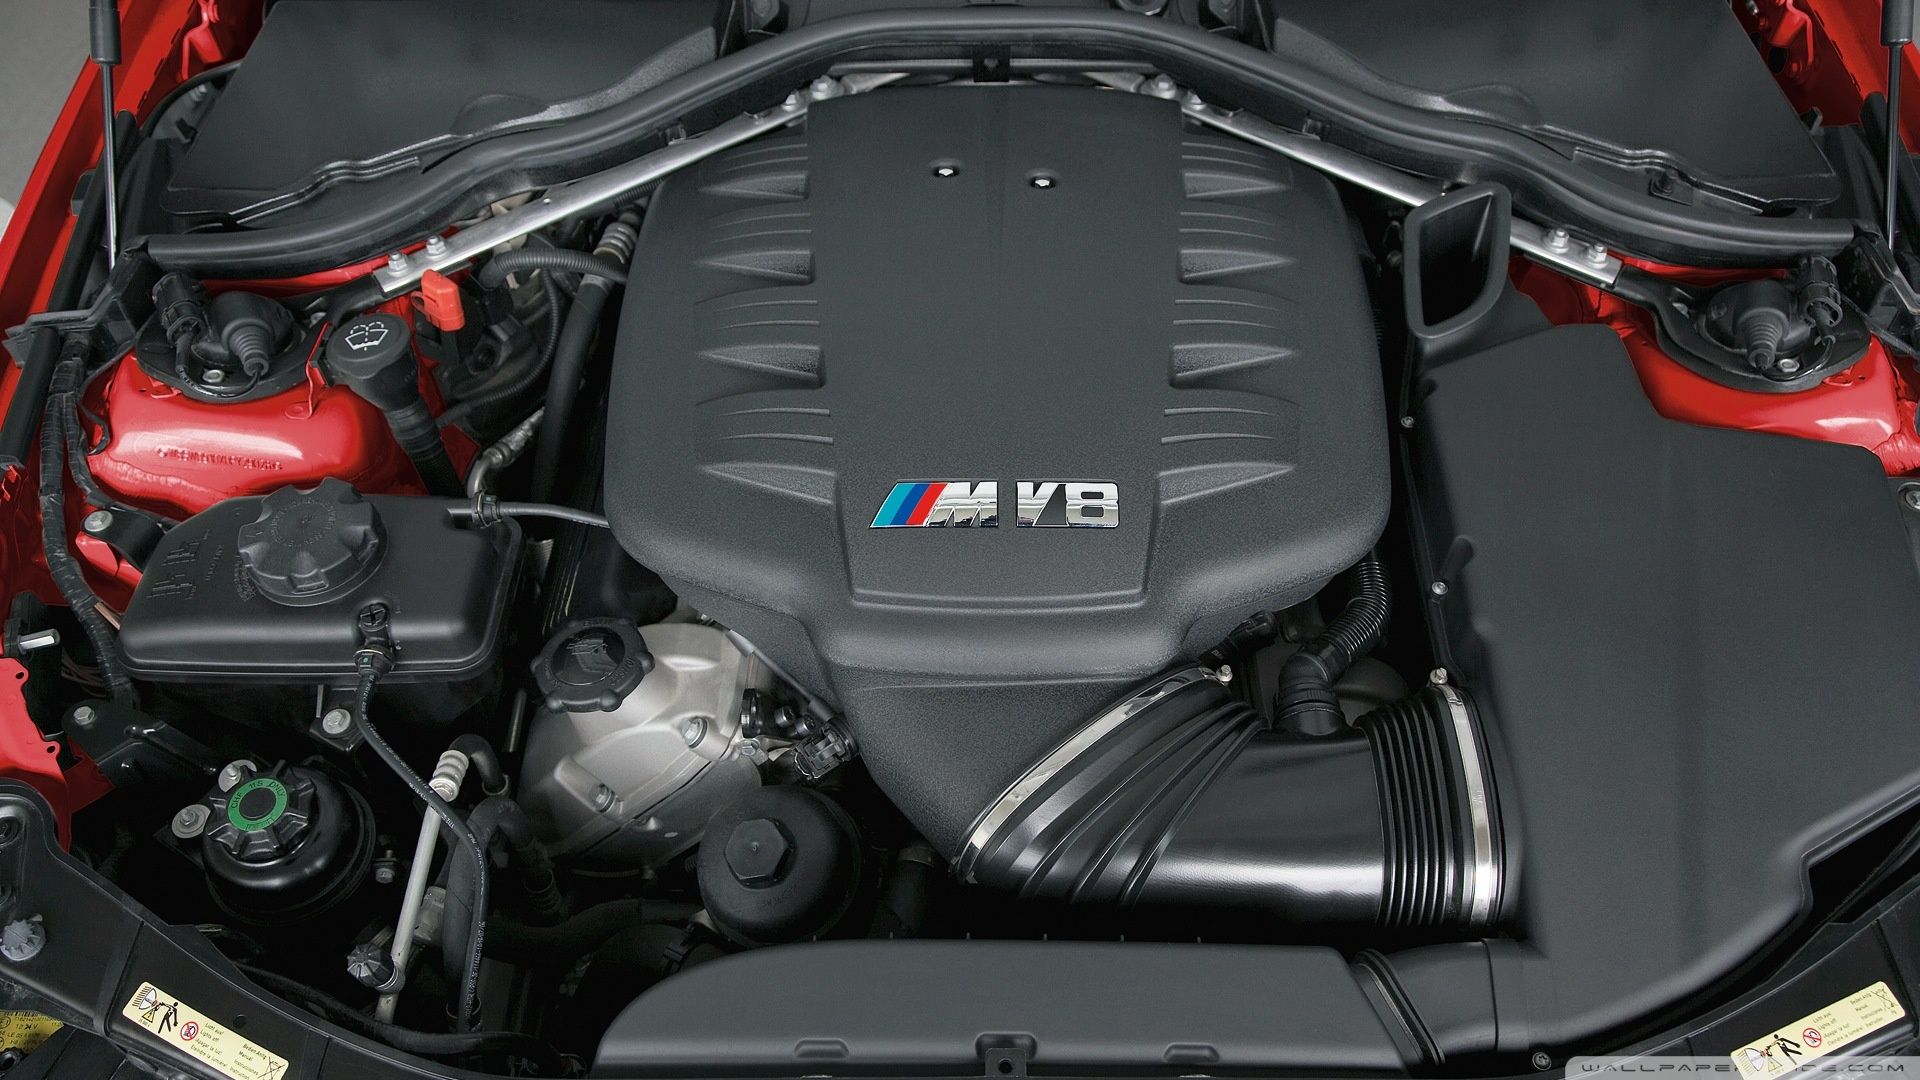 BMW M3 V8 Engine 1 Ultra HD Desktop .wallpaperwide.com